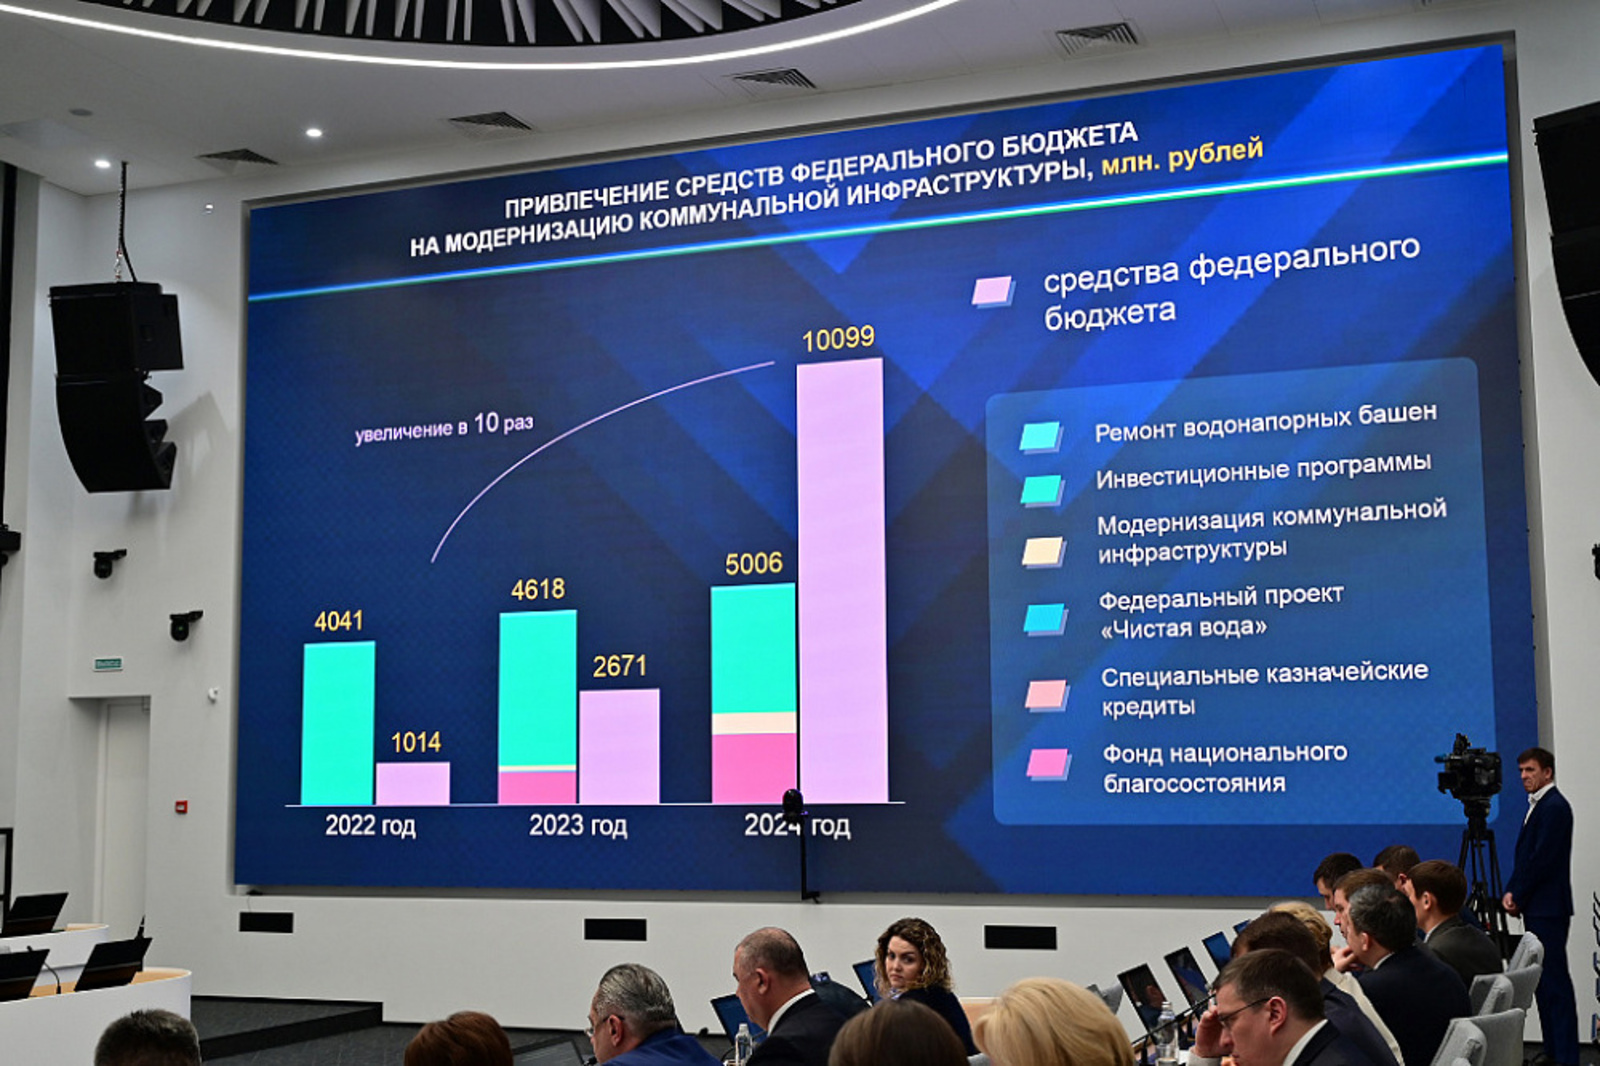 Башкортостан привлёк более 10 млрд рублей из федерального бюджета на модернизацию коммунальной инфраструктуры